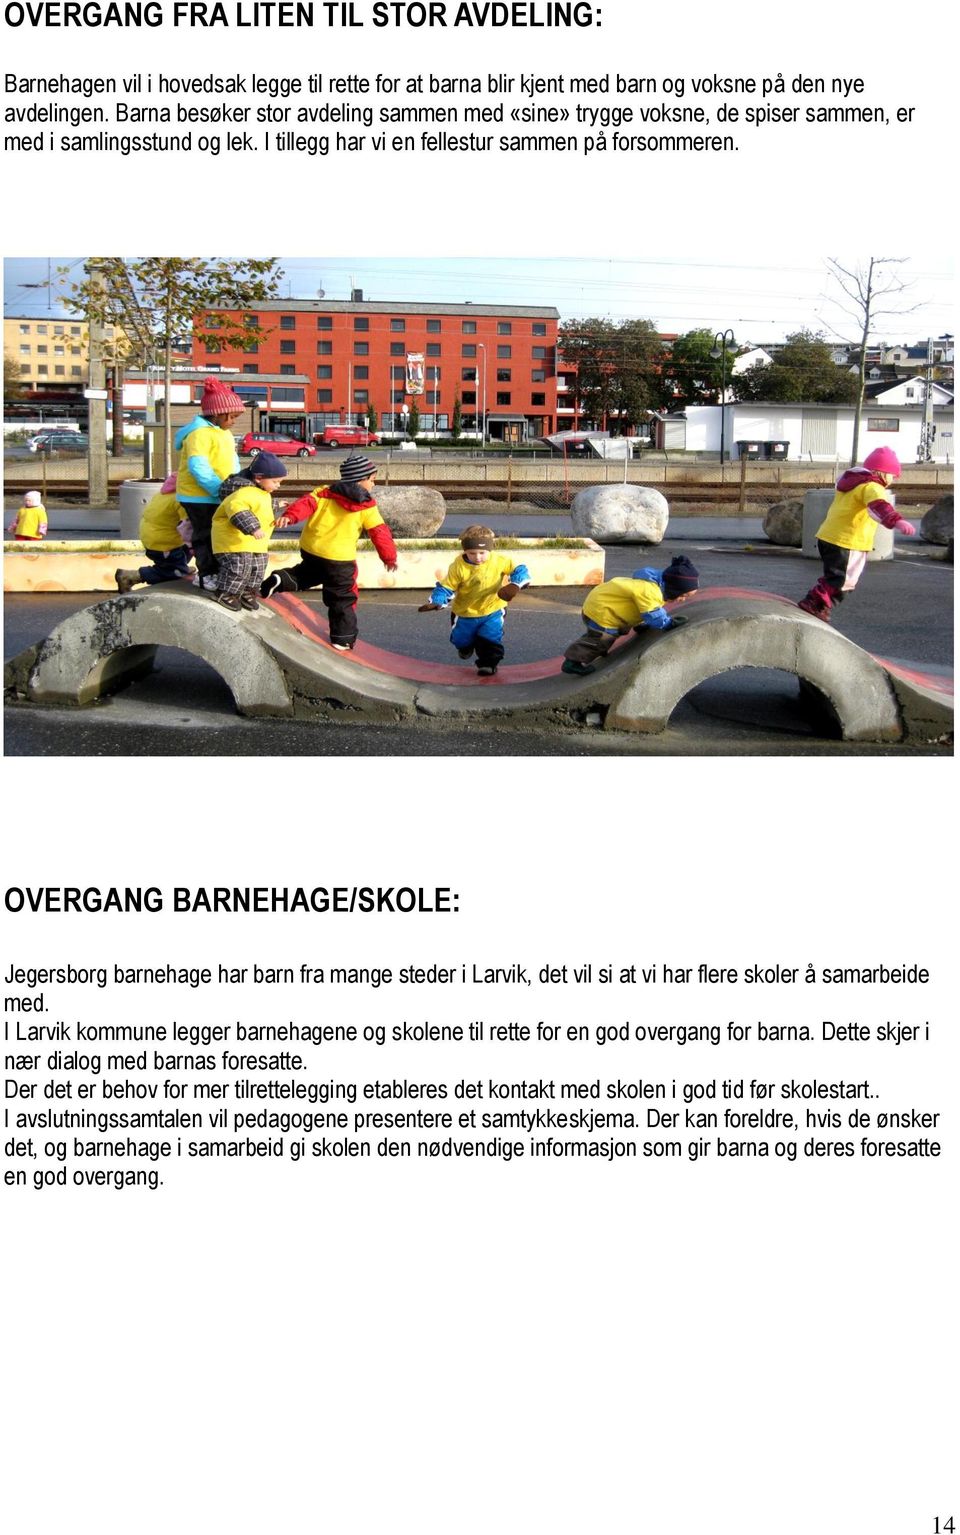 OVERGANG BARNEHAGE/SKOLE: Jegersborg barnehage har barn fra mange steder i Larvik, det vil si at vi har flere skoler å samarbeide med.